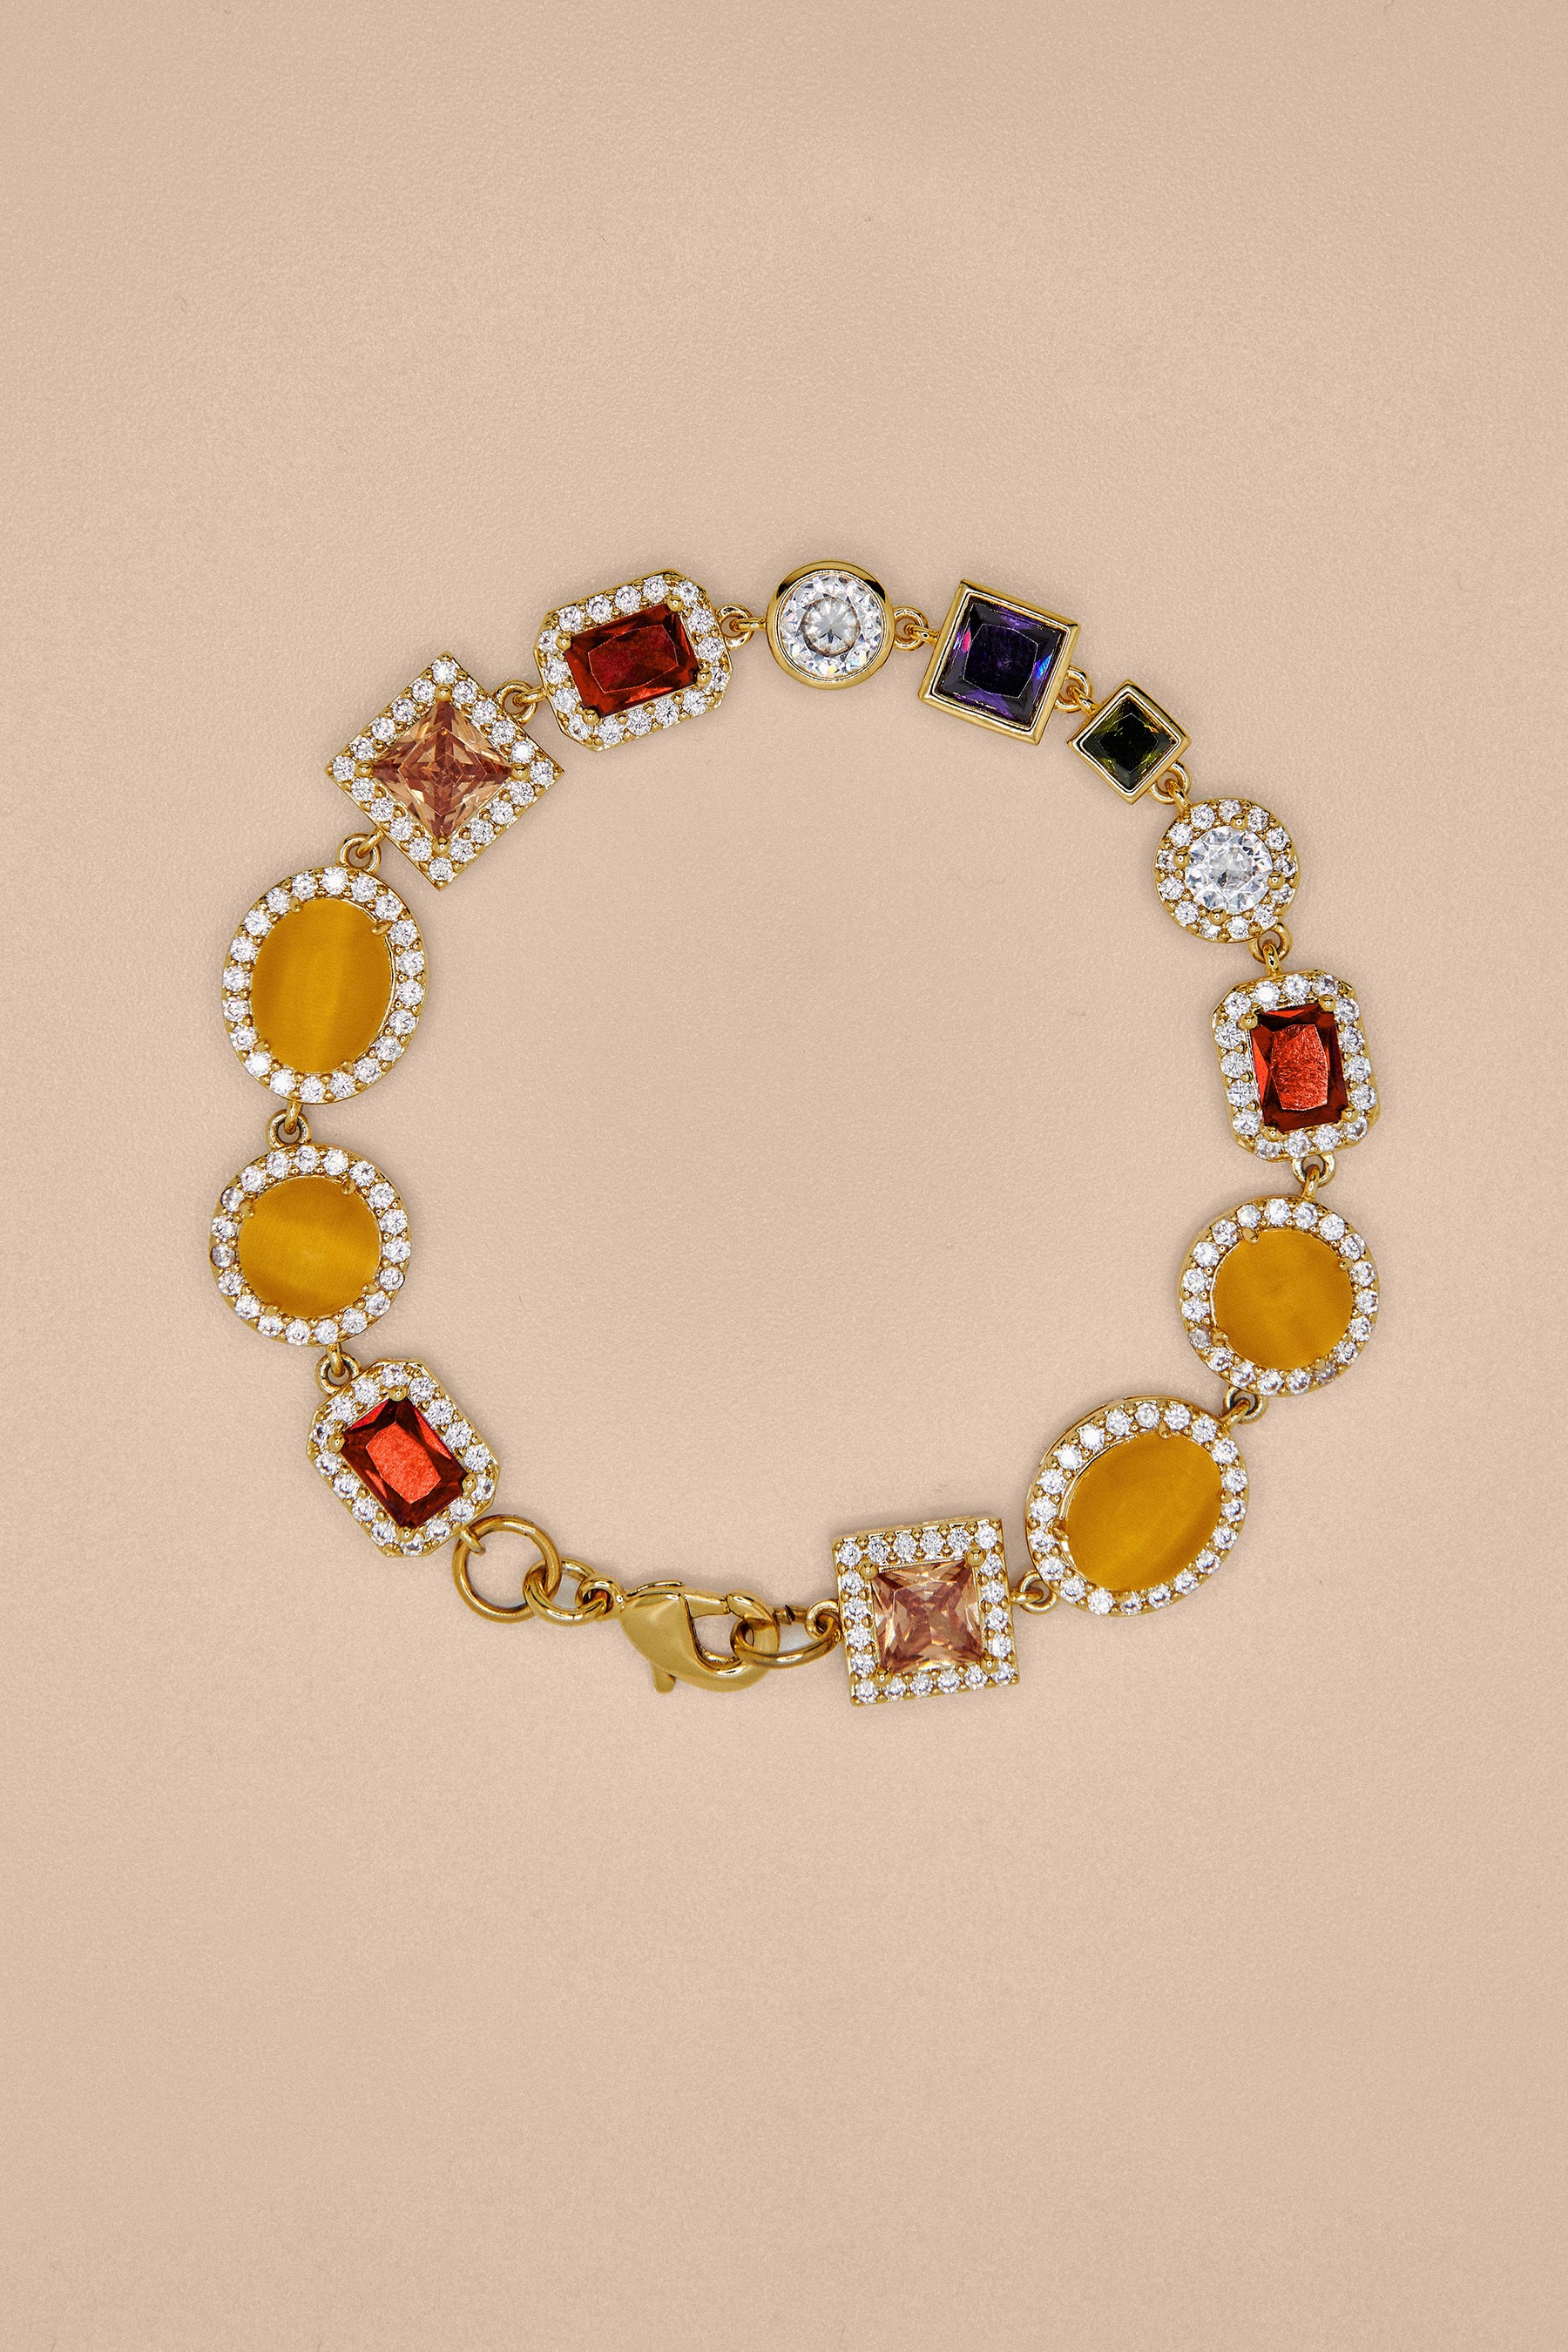 Effy Mosaic 14K Yellow Gold Multi Gemstone Bracelet, 2.47 TCW –  effyjewelry.com